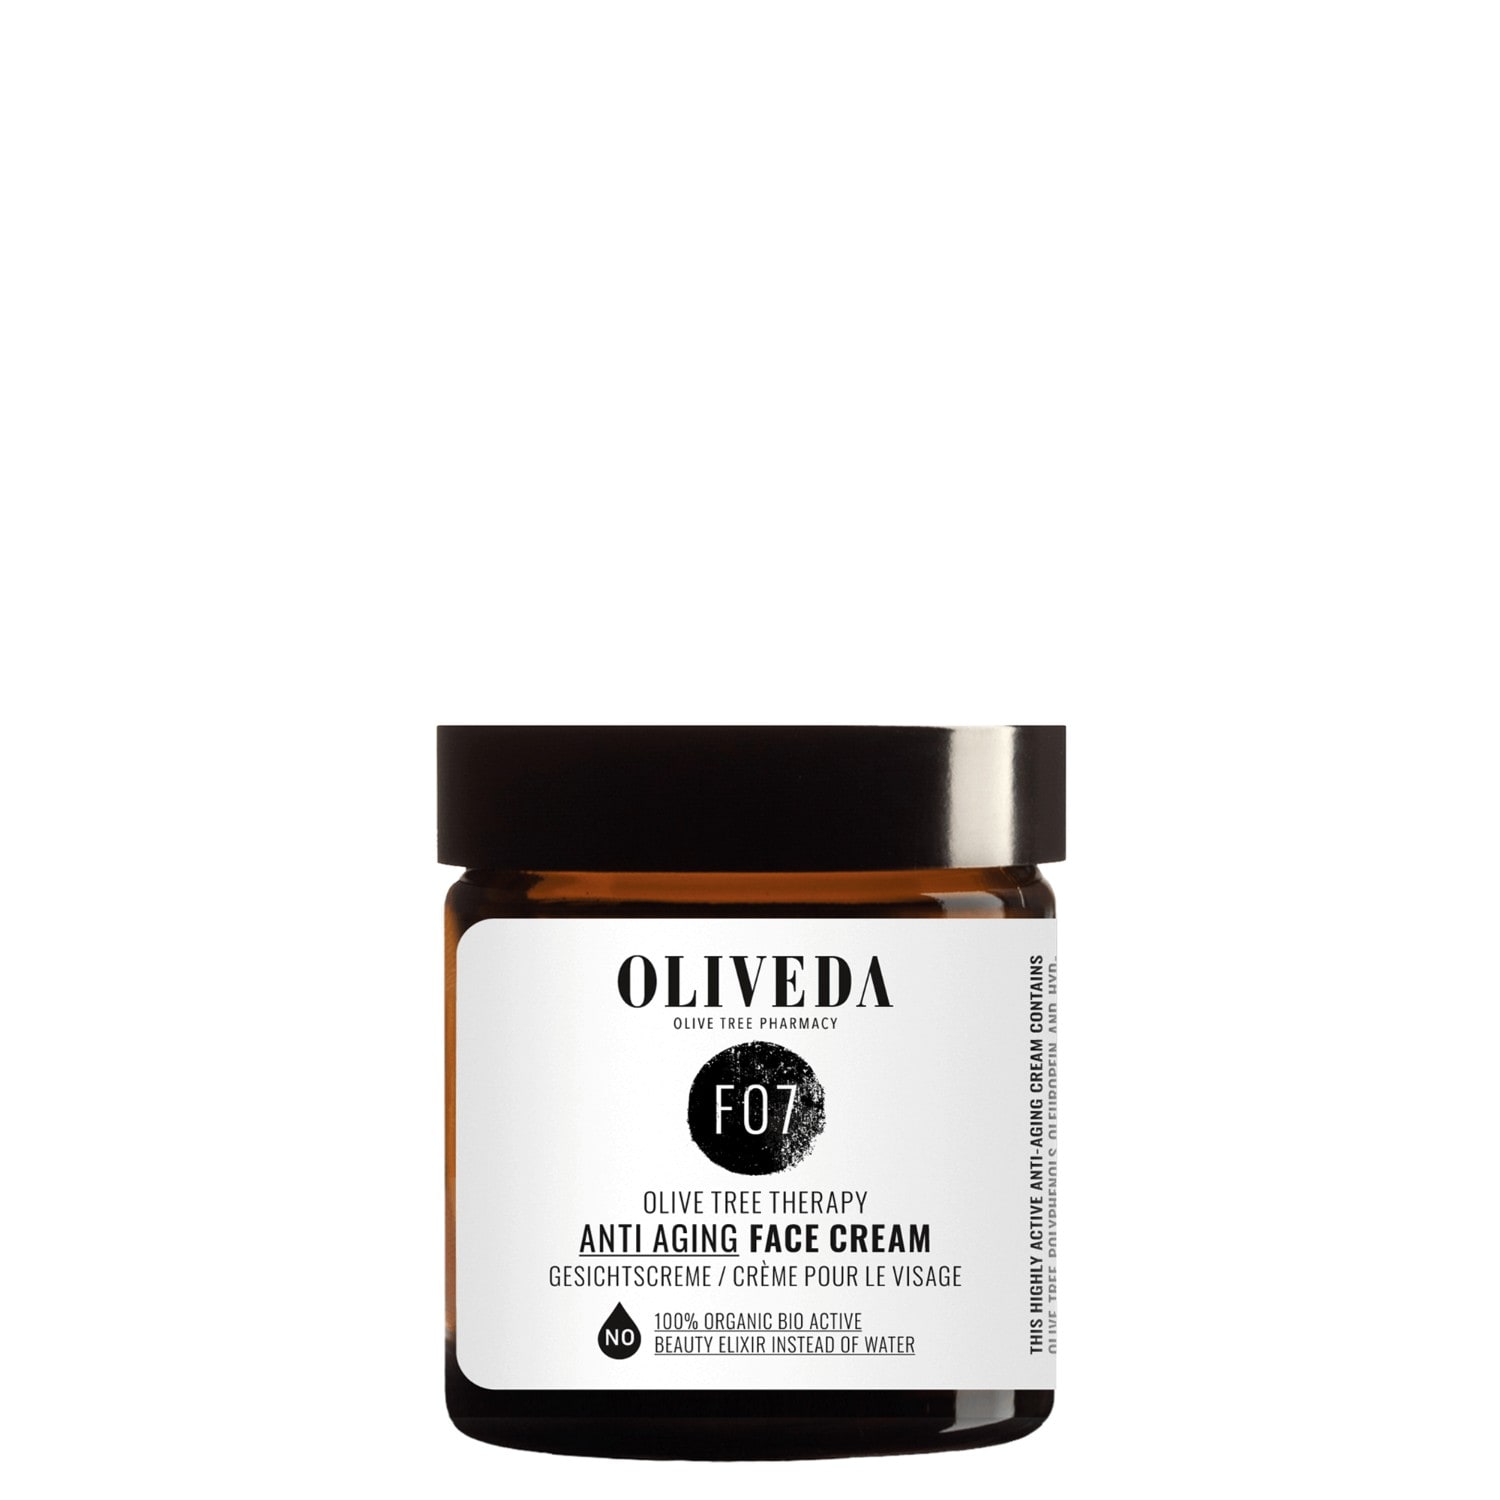 Oliveda Anti-aging face cream